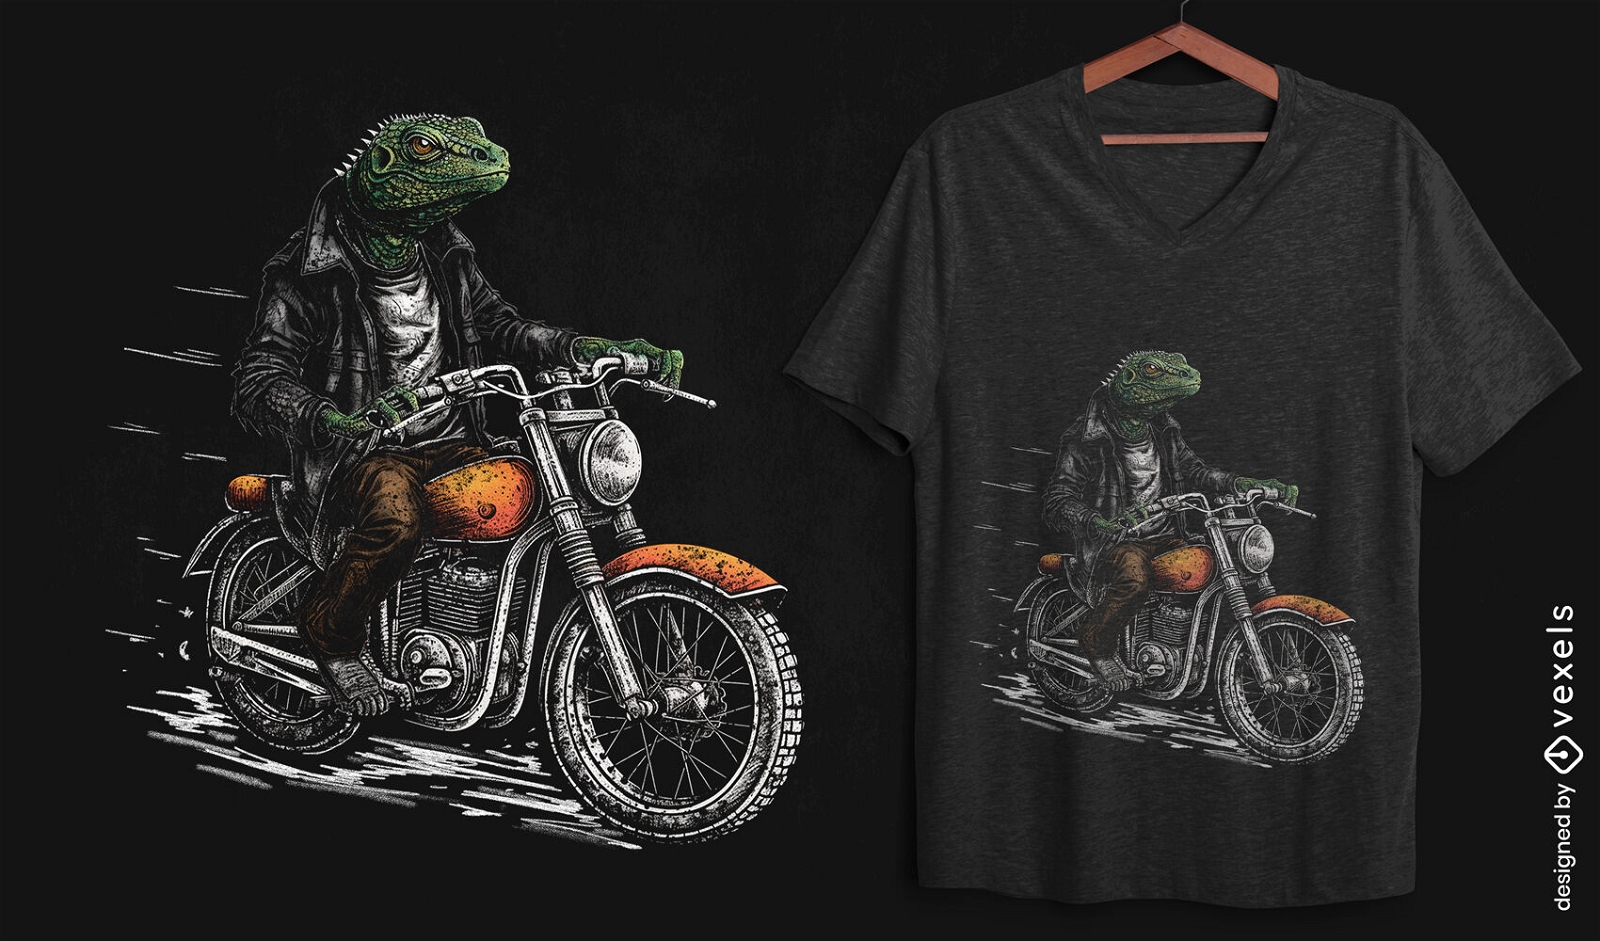 Reptile biker t-shirt design